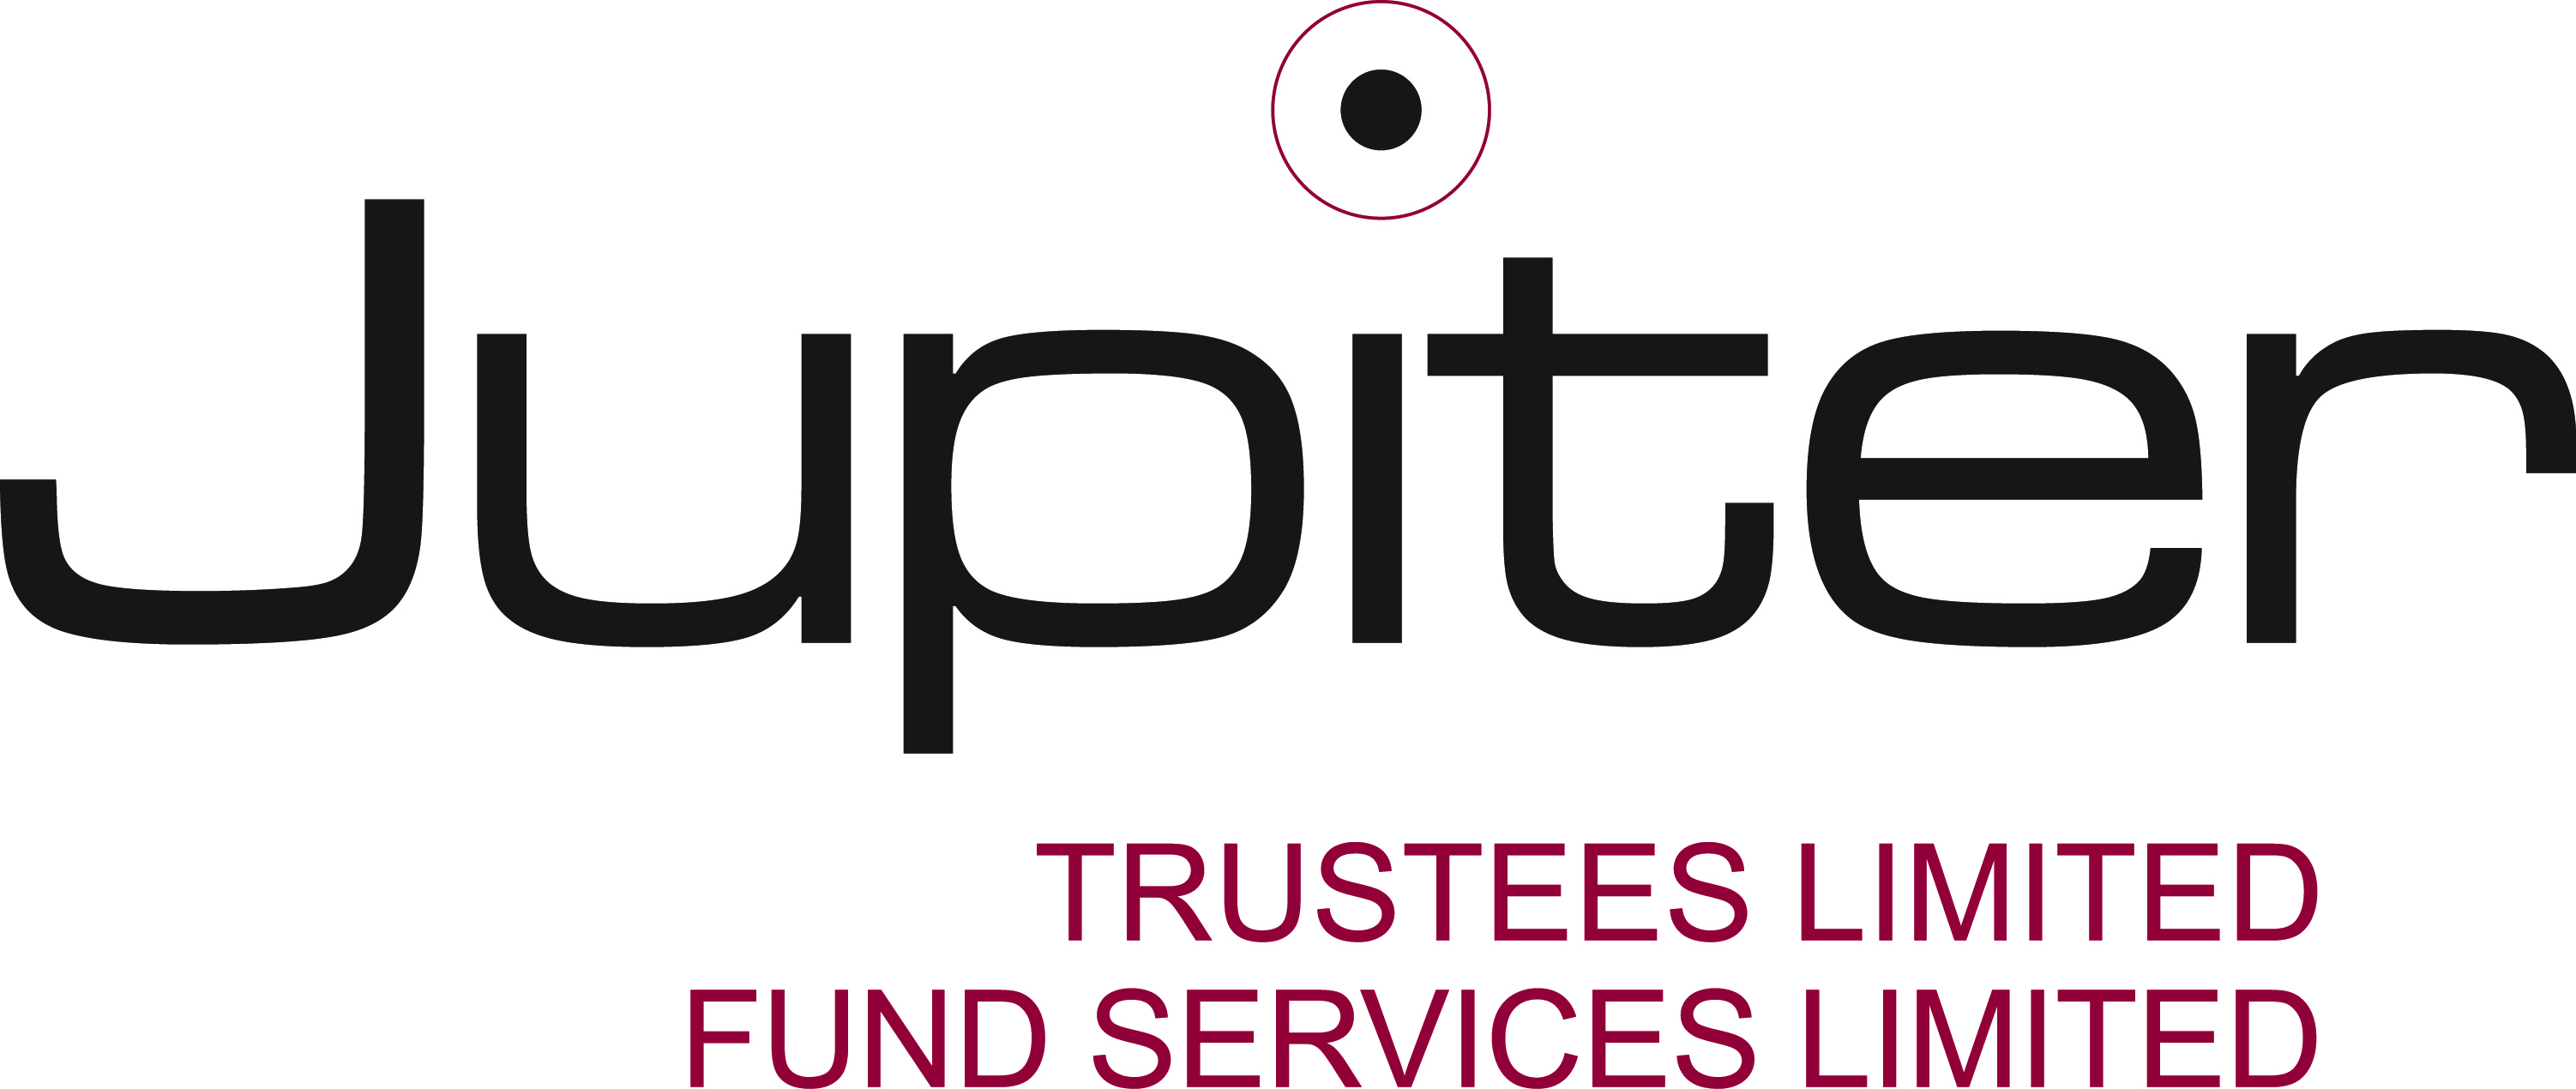 Jupiter Trustees Limited